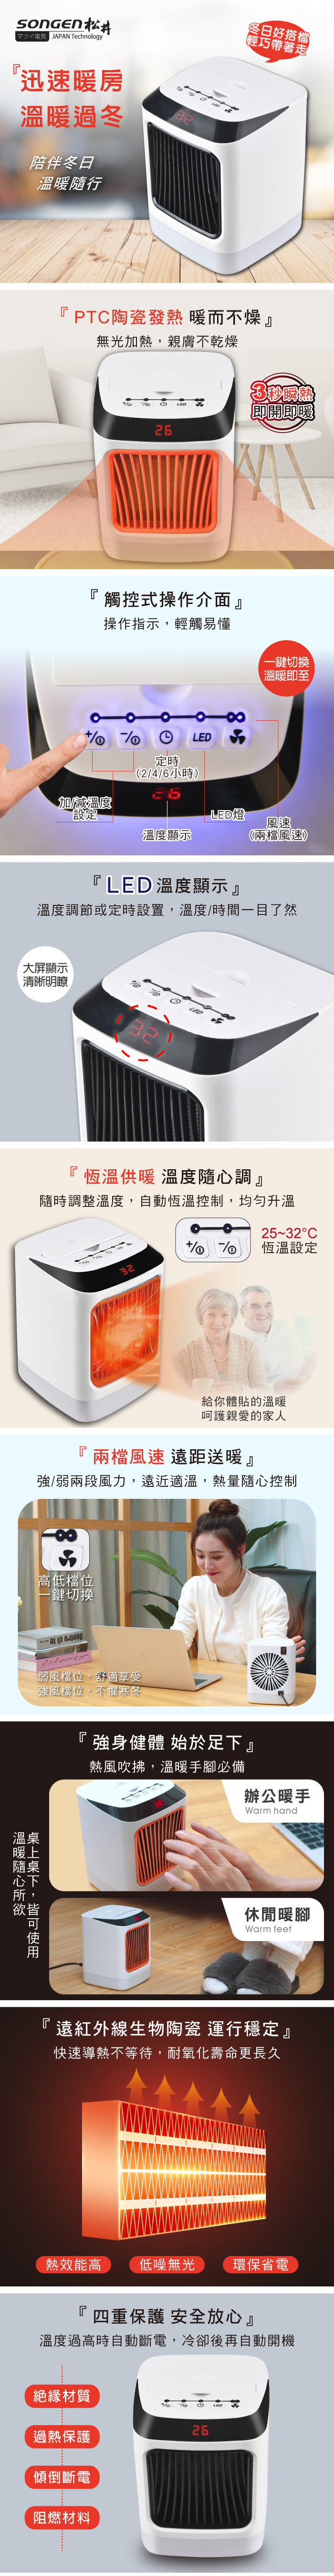 【SONGEN松井】PTC陶瓷溫控暖氣機/電暖器(SG-107FH)